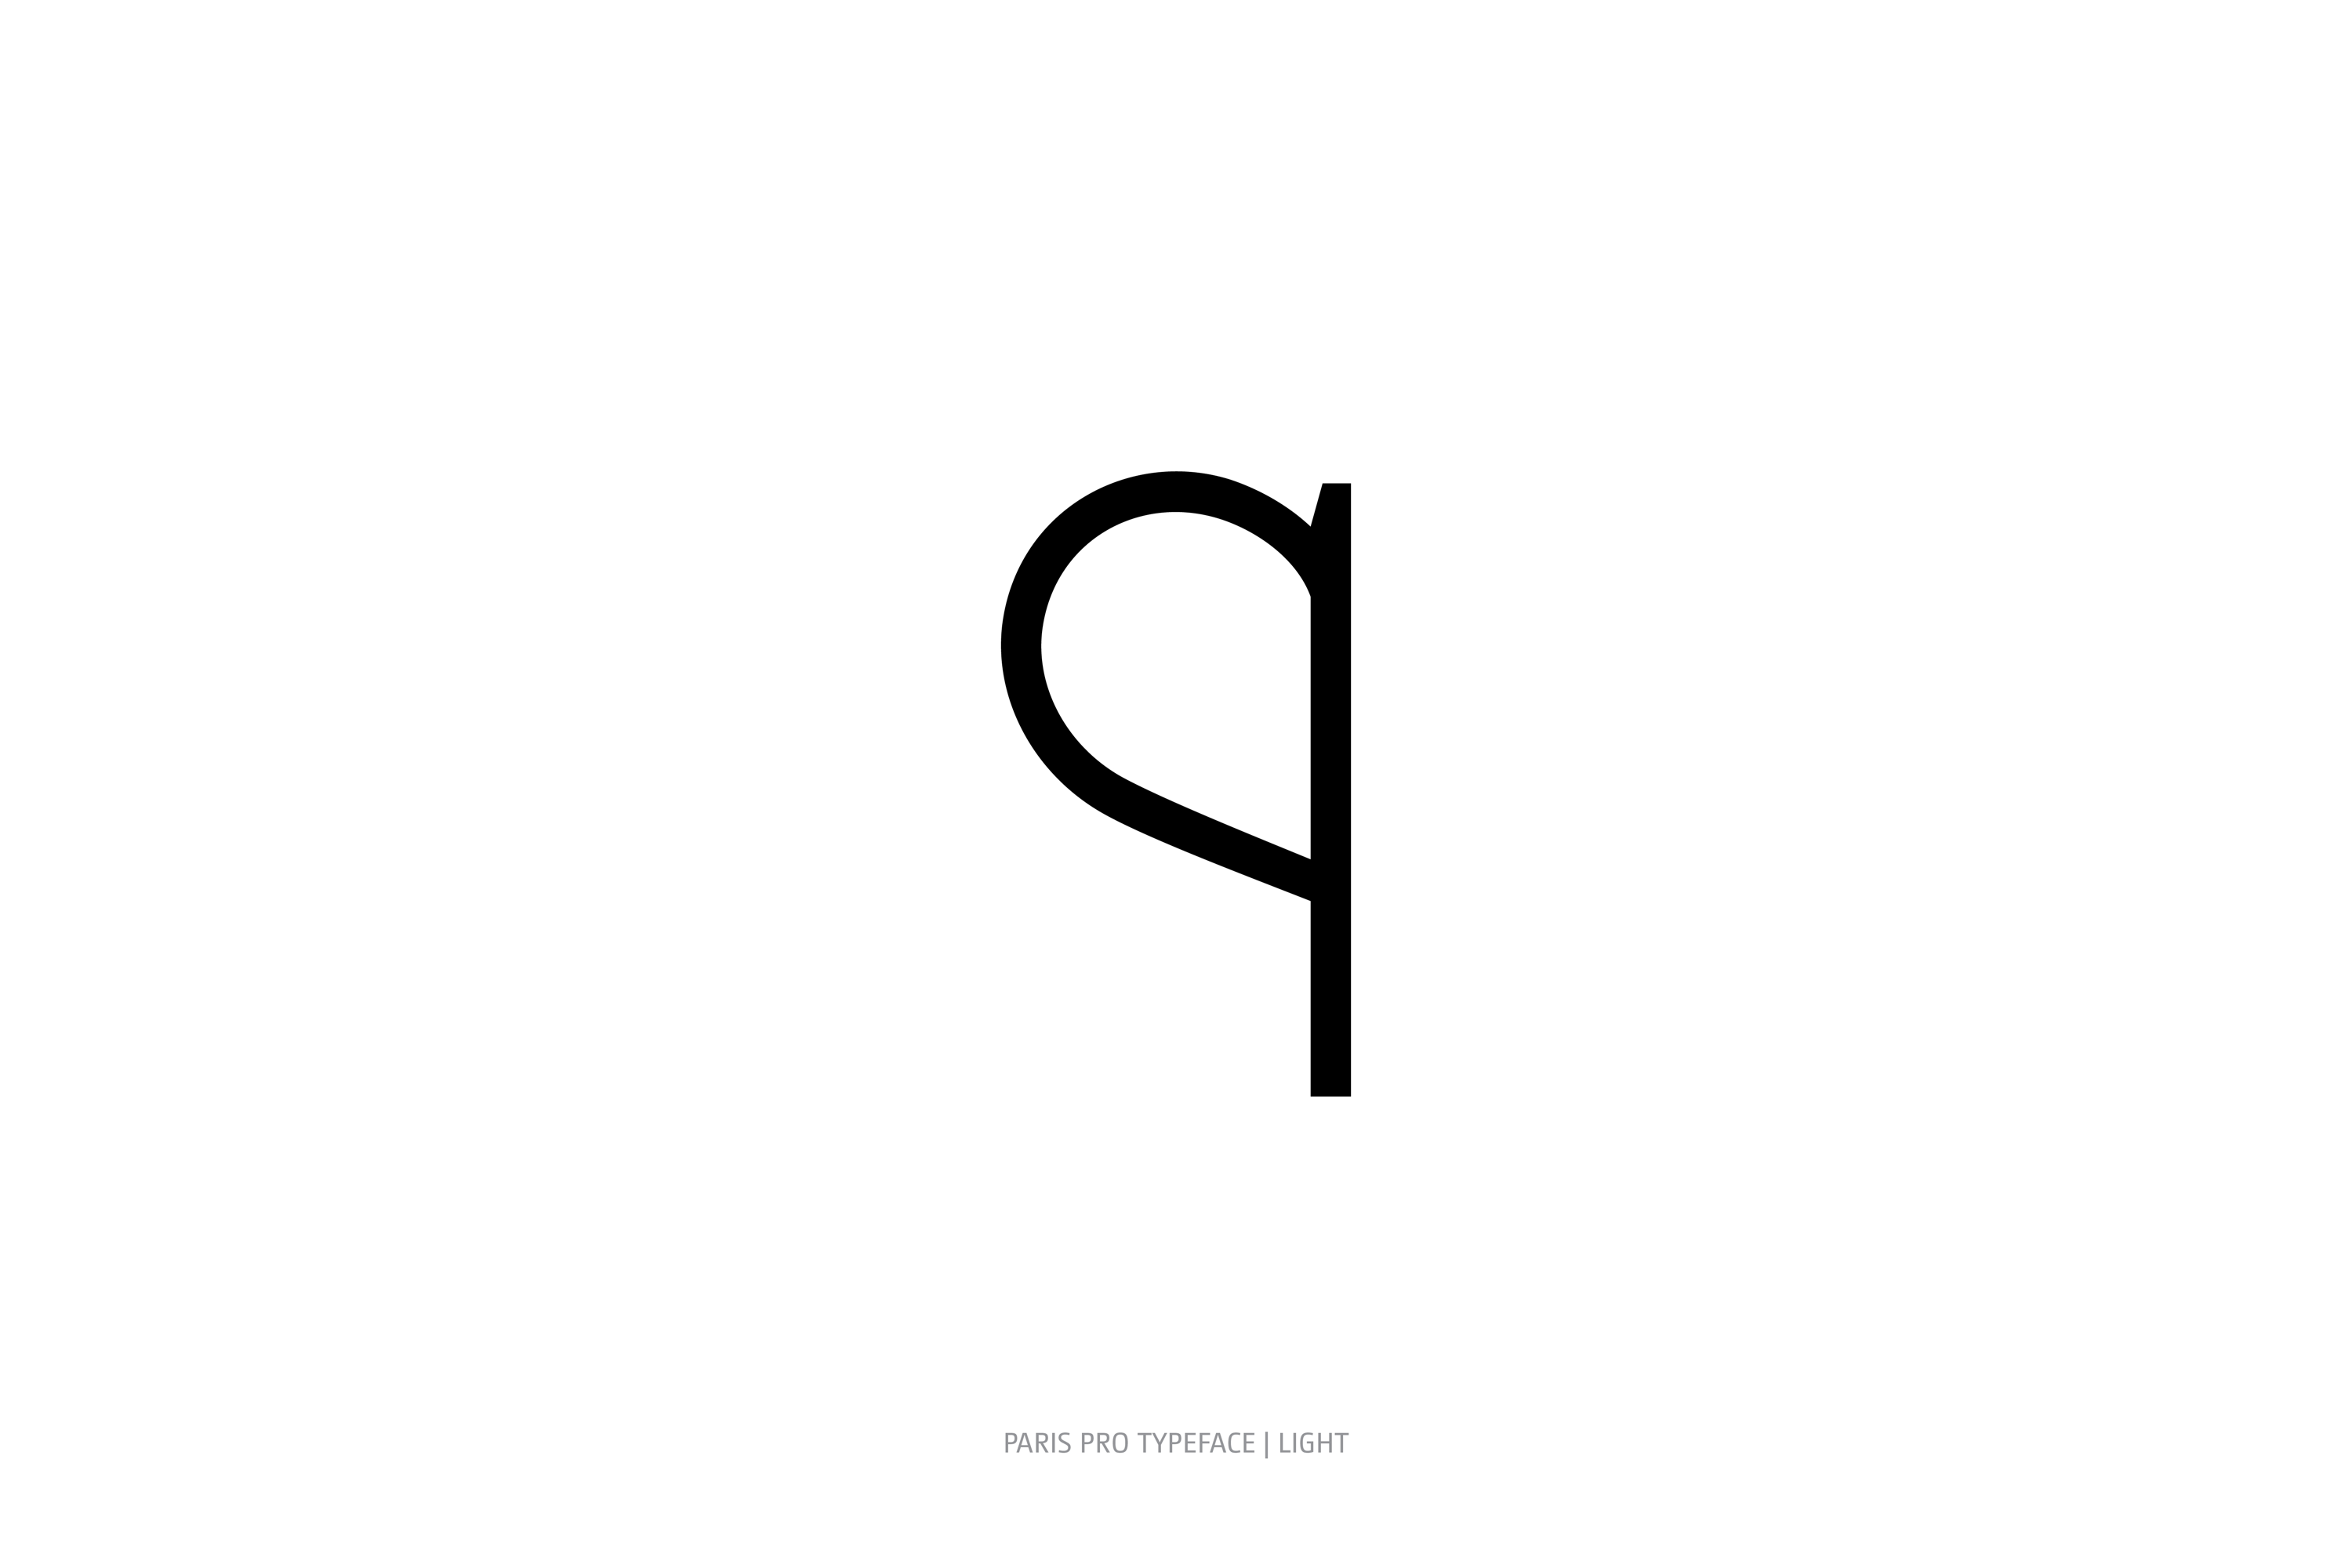 Paris Pro Typeface Light Style q